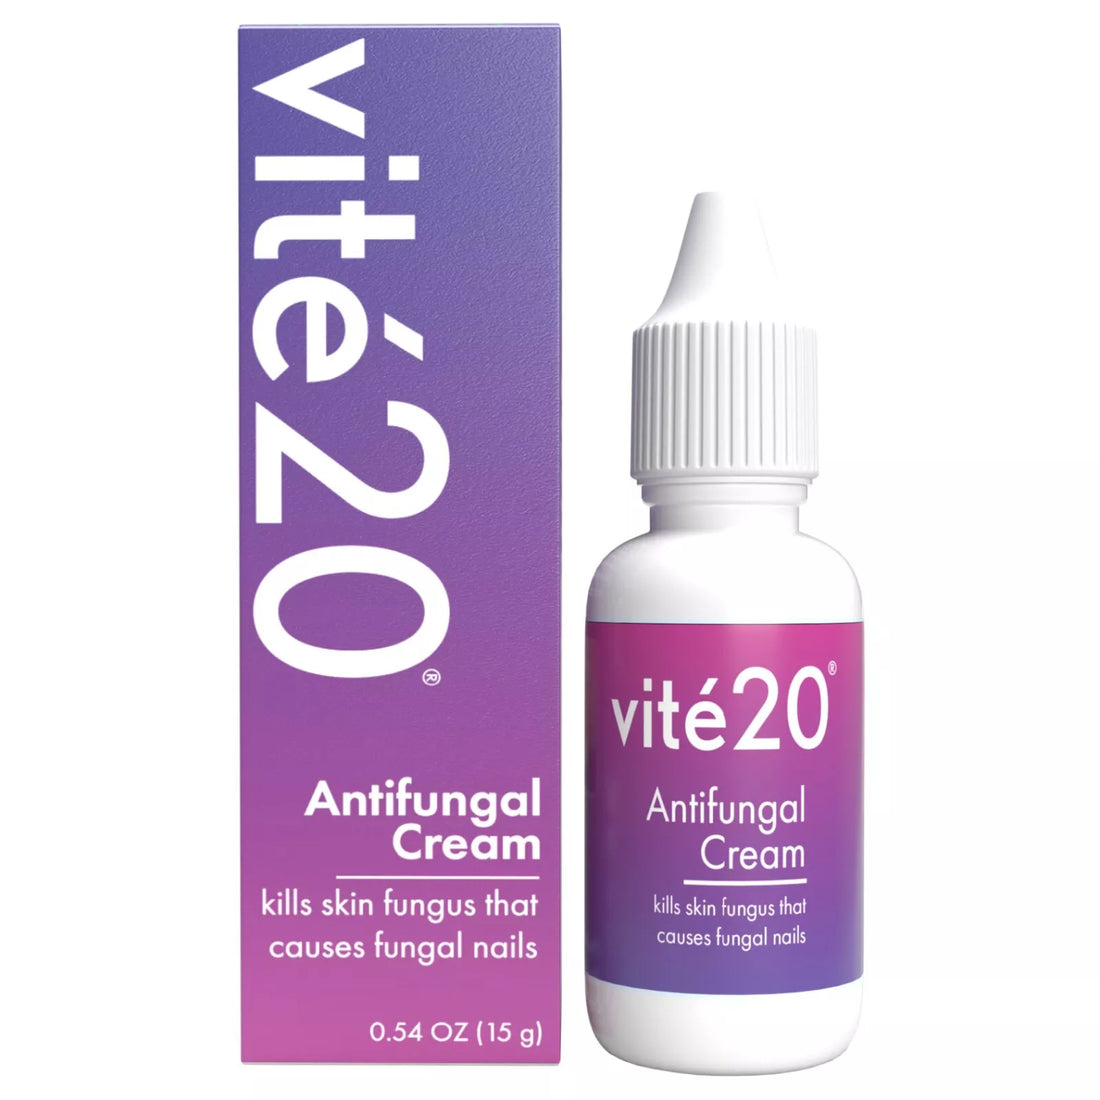 Vite20 Antifungal Cream, 0.54 oz